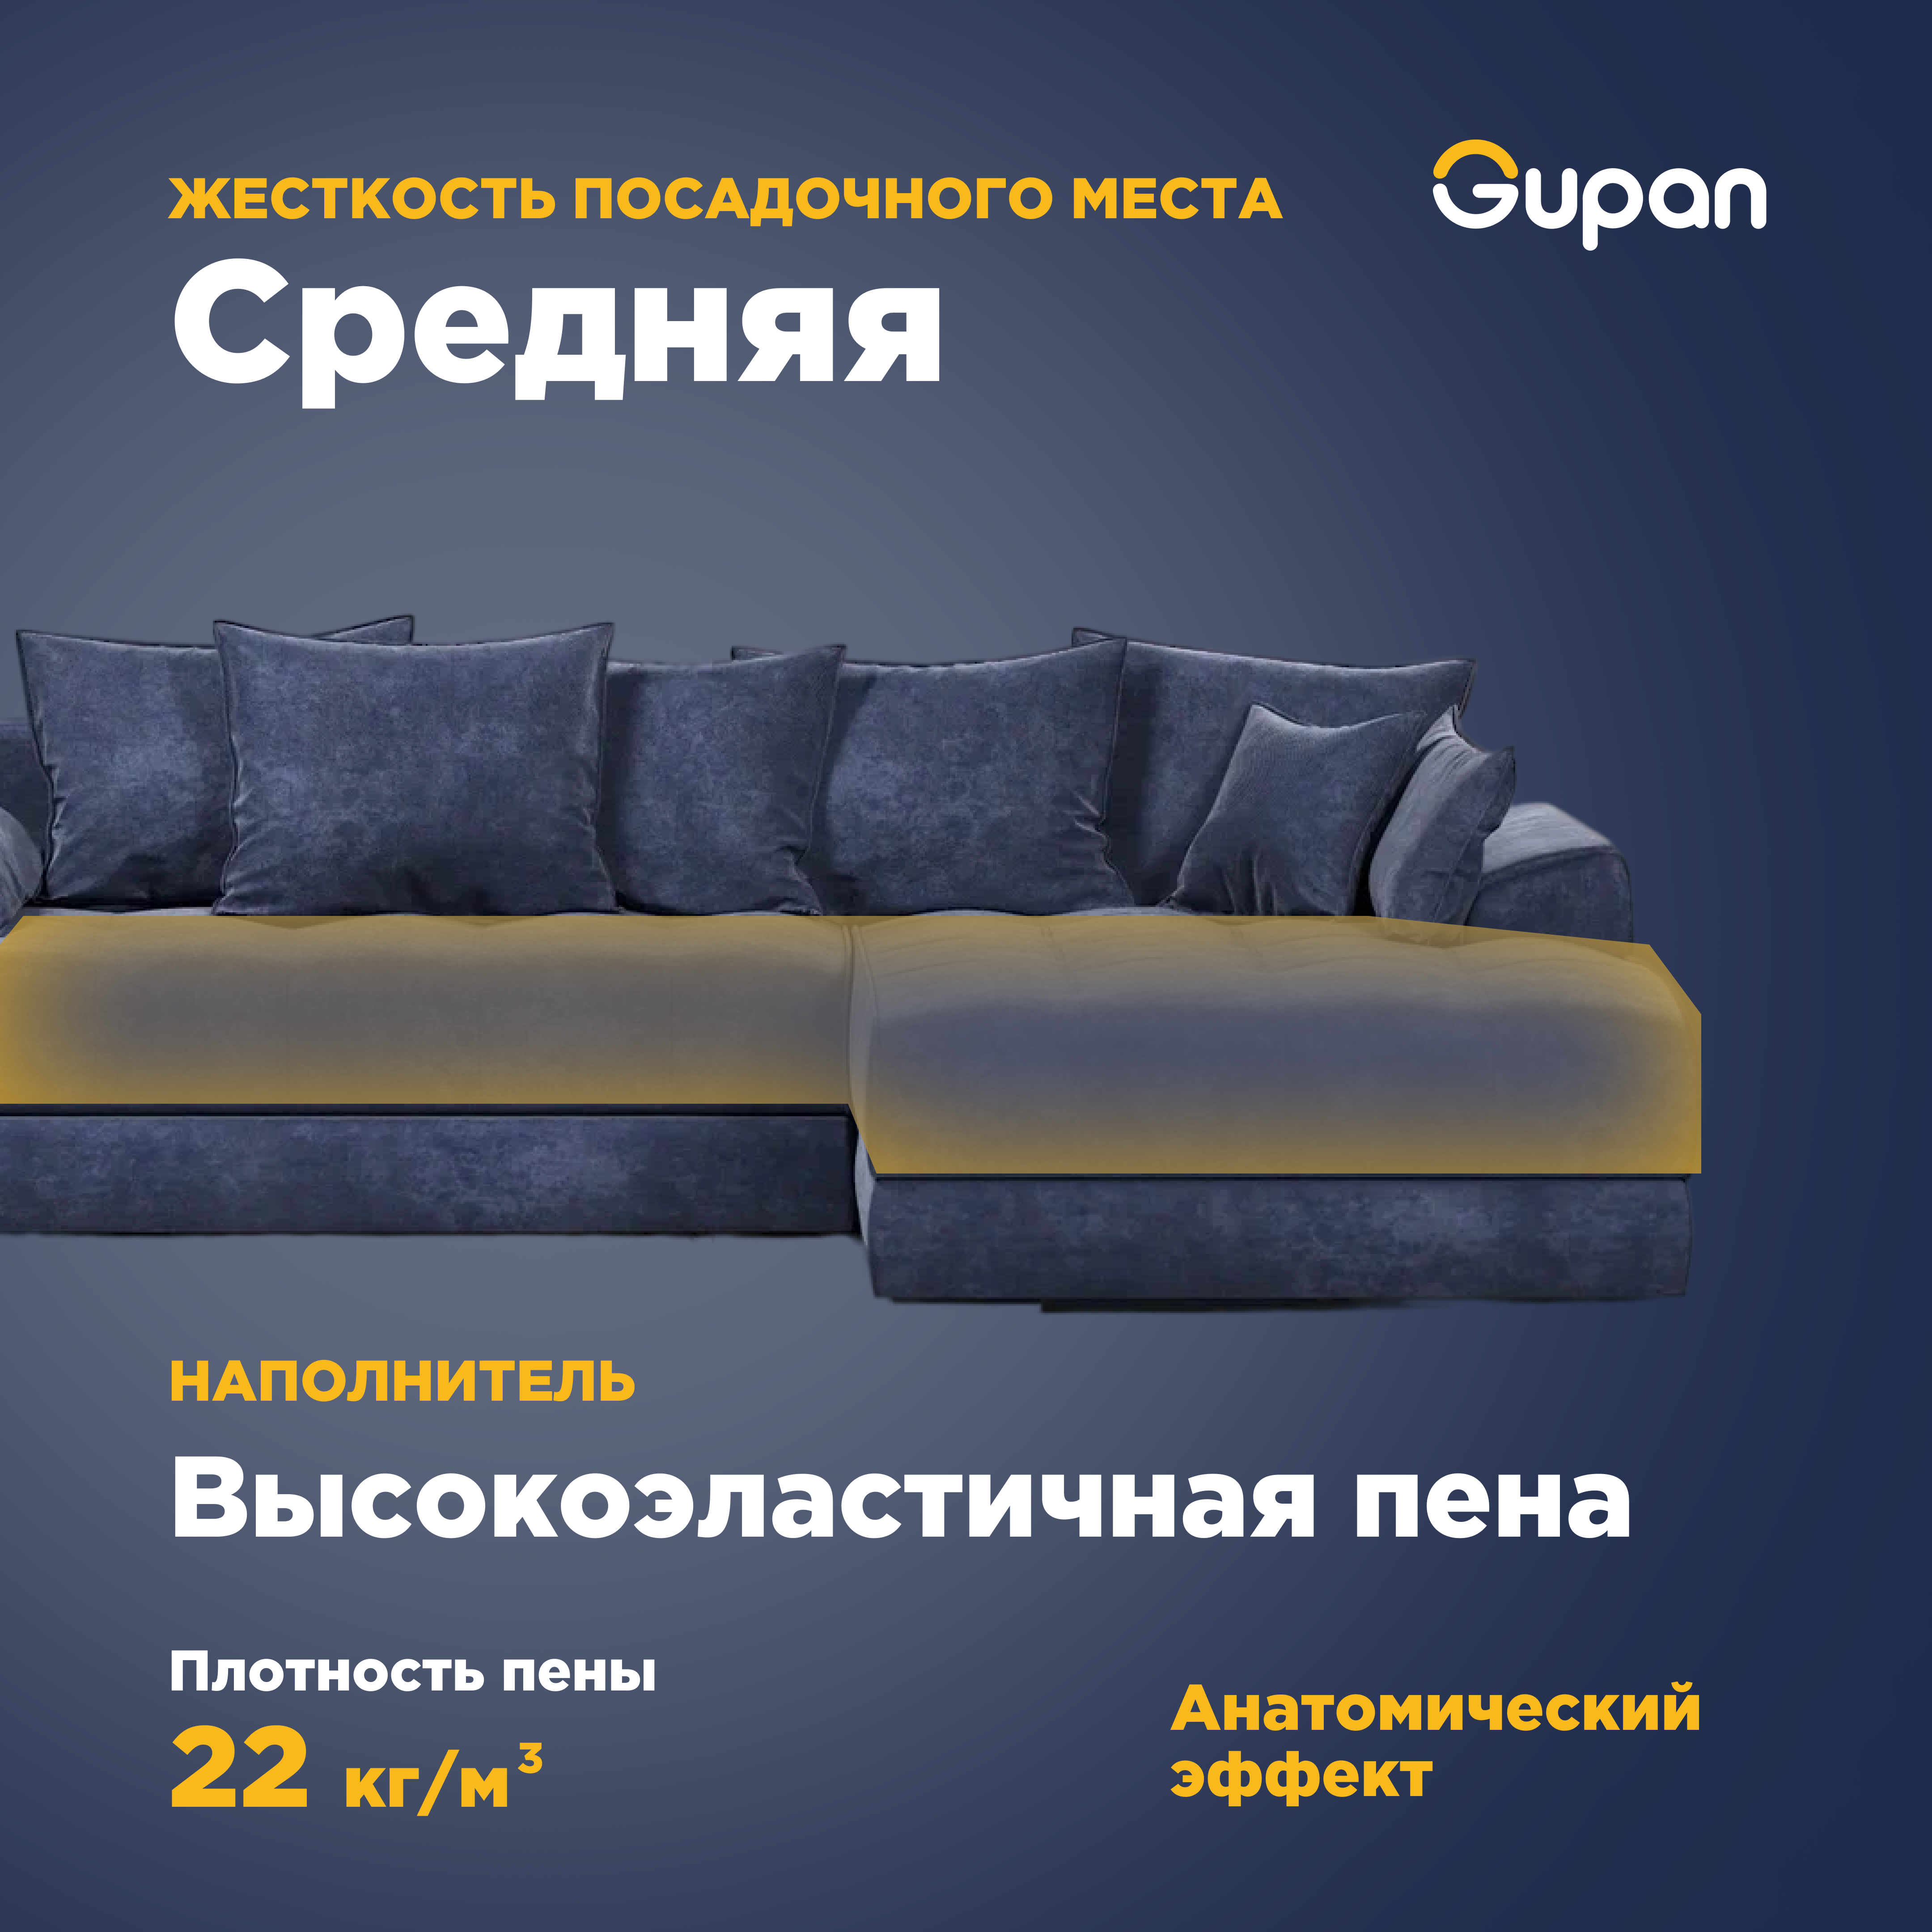 Угловой диван-кровать Gupan Nordkisa, механизм Еврокнижка, 285х190х87 см, наполнитель ППУ, ящик для белья, цвет Amigo Navy, угол справа - фотография № 3